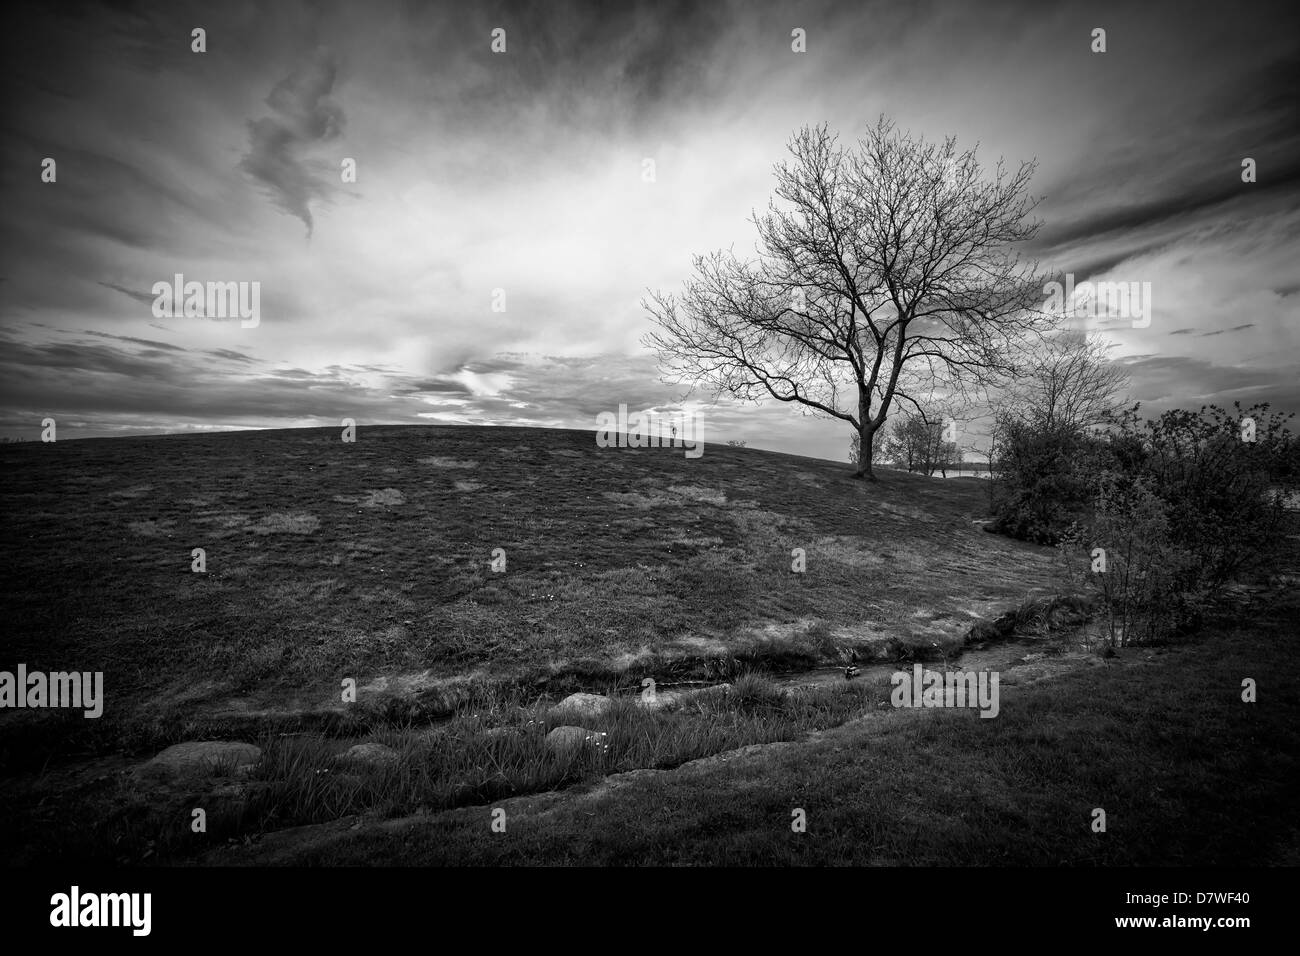 Paysage spectaculaire image d'un ciel menaçant derrière une petite colline, avec un seul arbre sans feuilles, tourné en noir et blanc. Banque D'Images